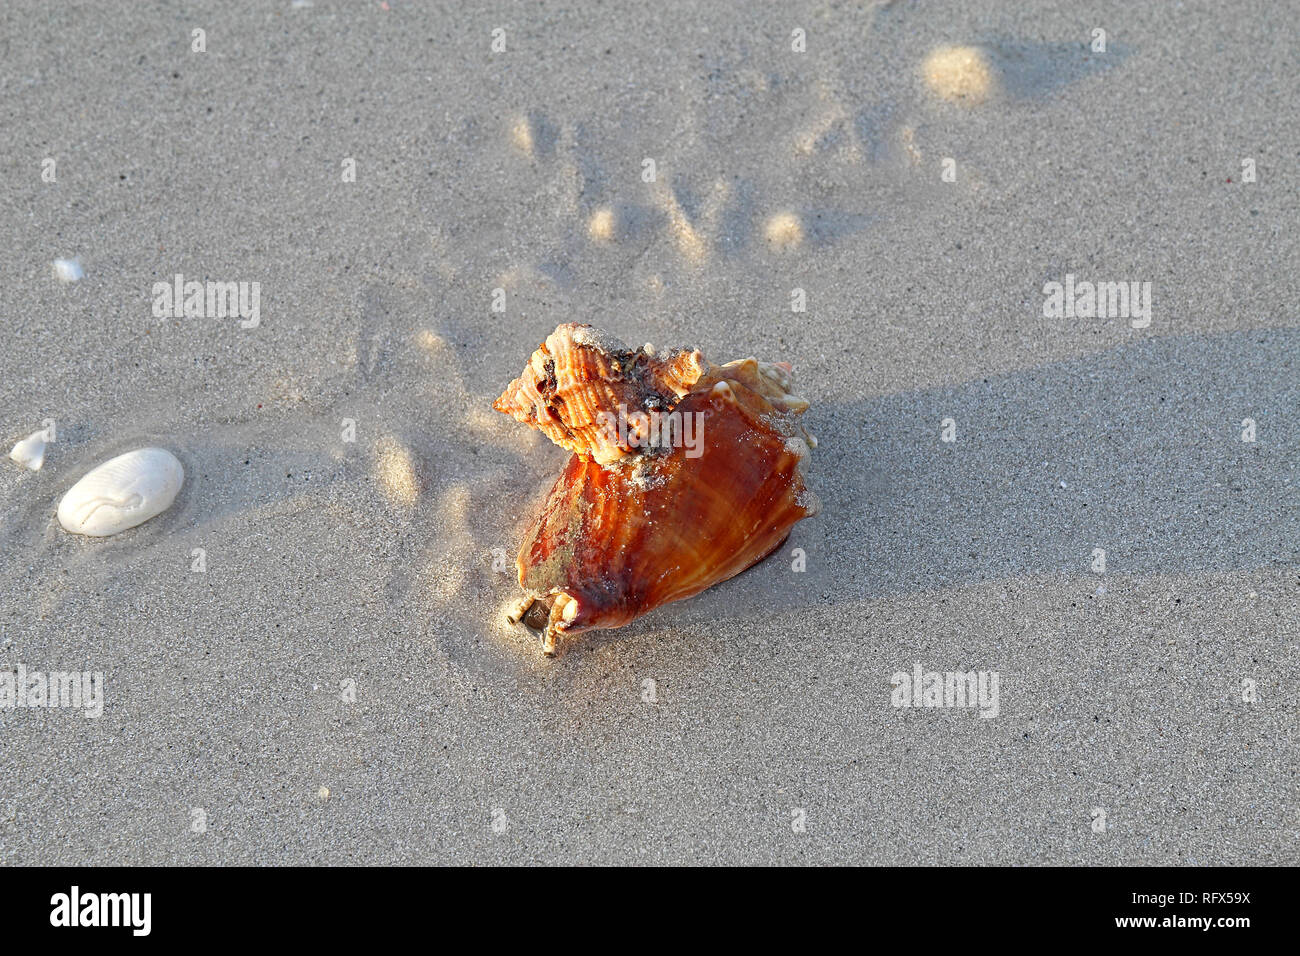 Räuberische apple murex Schnecke (Phyllonotus pomum) angreifen und Essen ein Florida fighting Conch (Strombus Alatus) Lighthouse Beach auf Sanibel Island Stockfoto